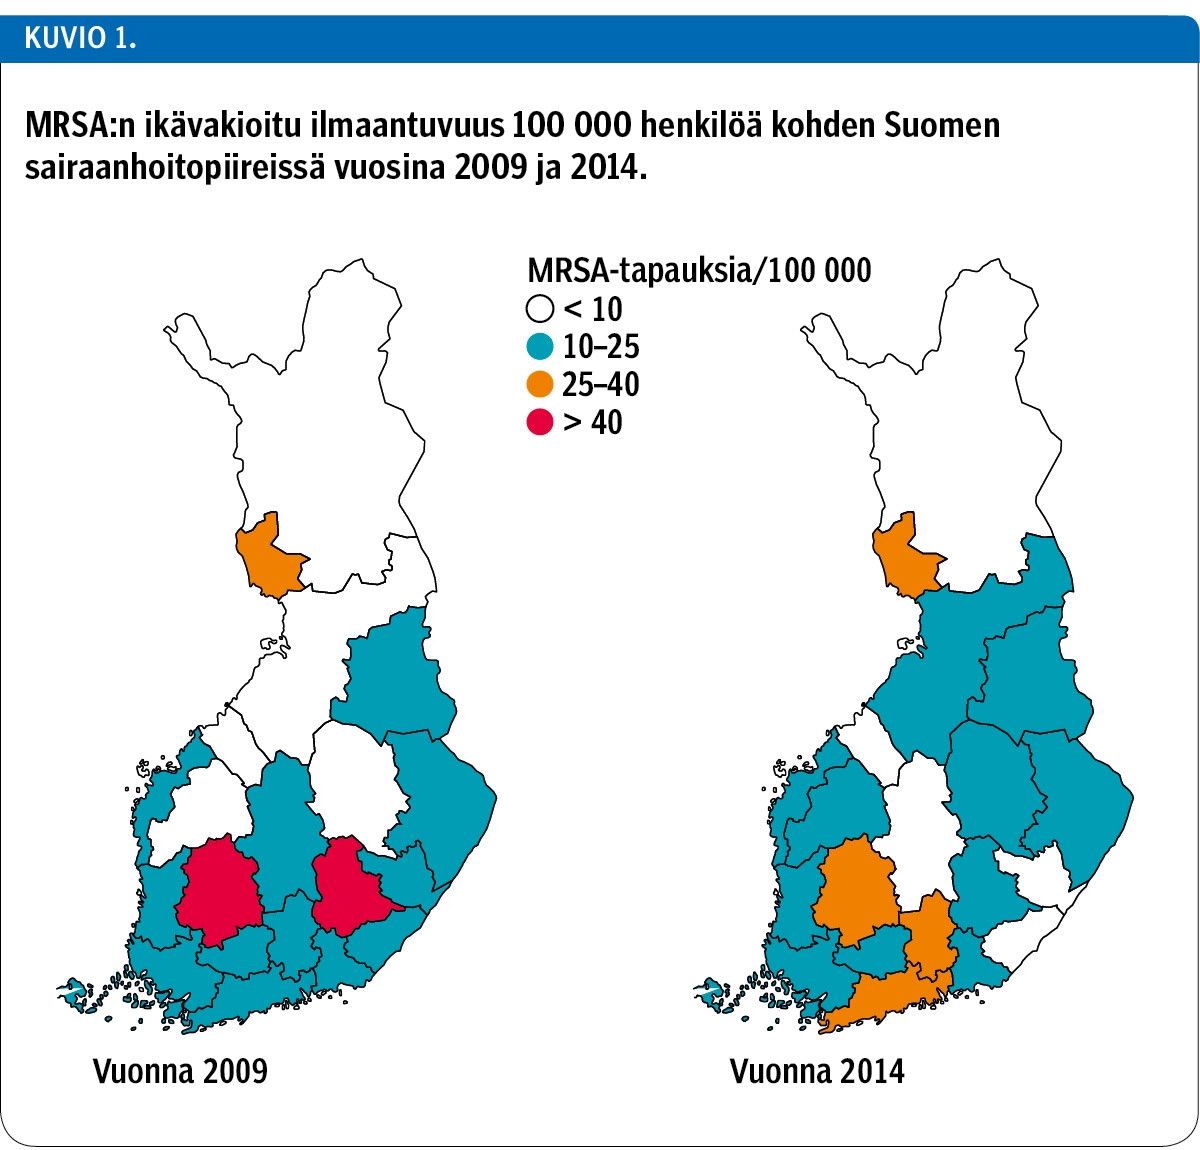 MRSA:n ikävakioitu ilmaantuvuus 100 000 henkilöä kohden Suomen sairaanhoitopiireissä vuosina 2009 ja 2014.